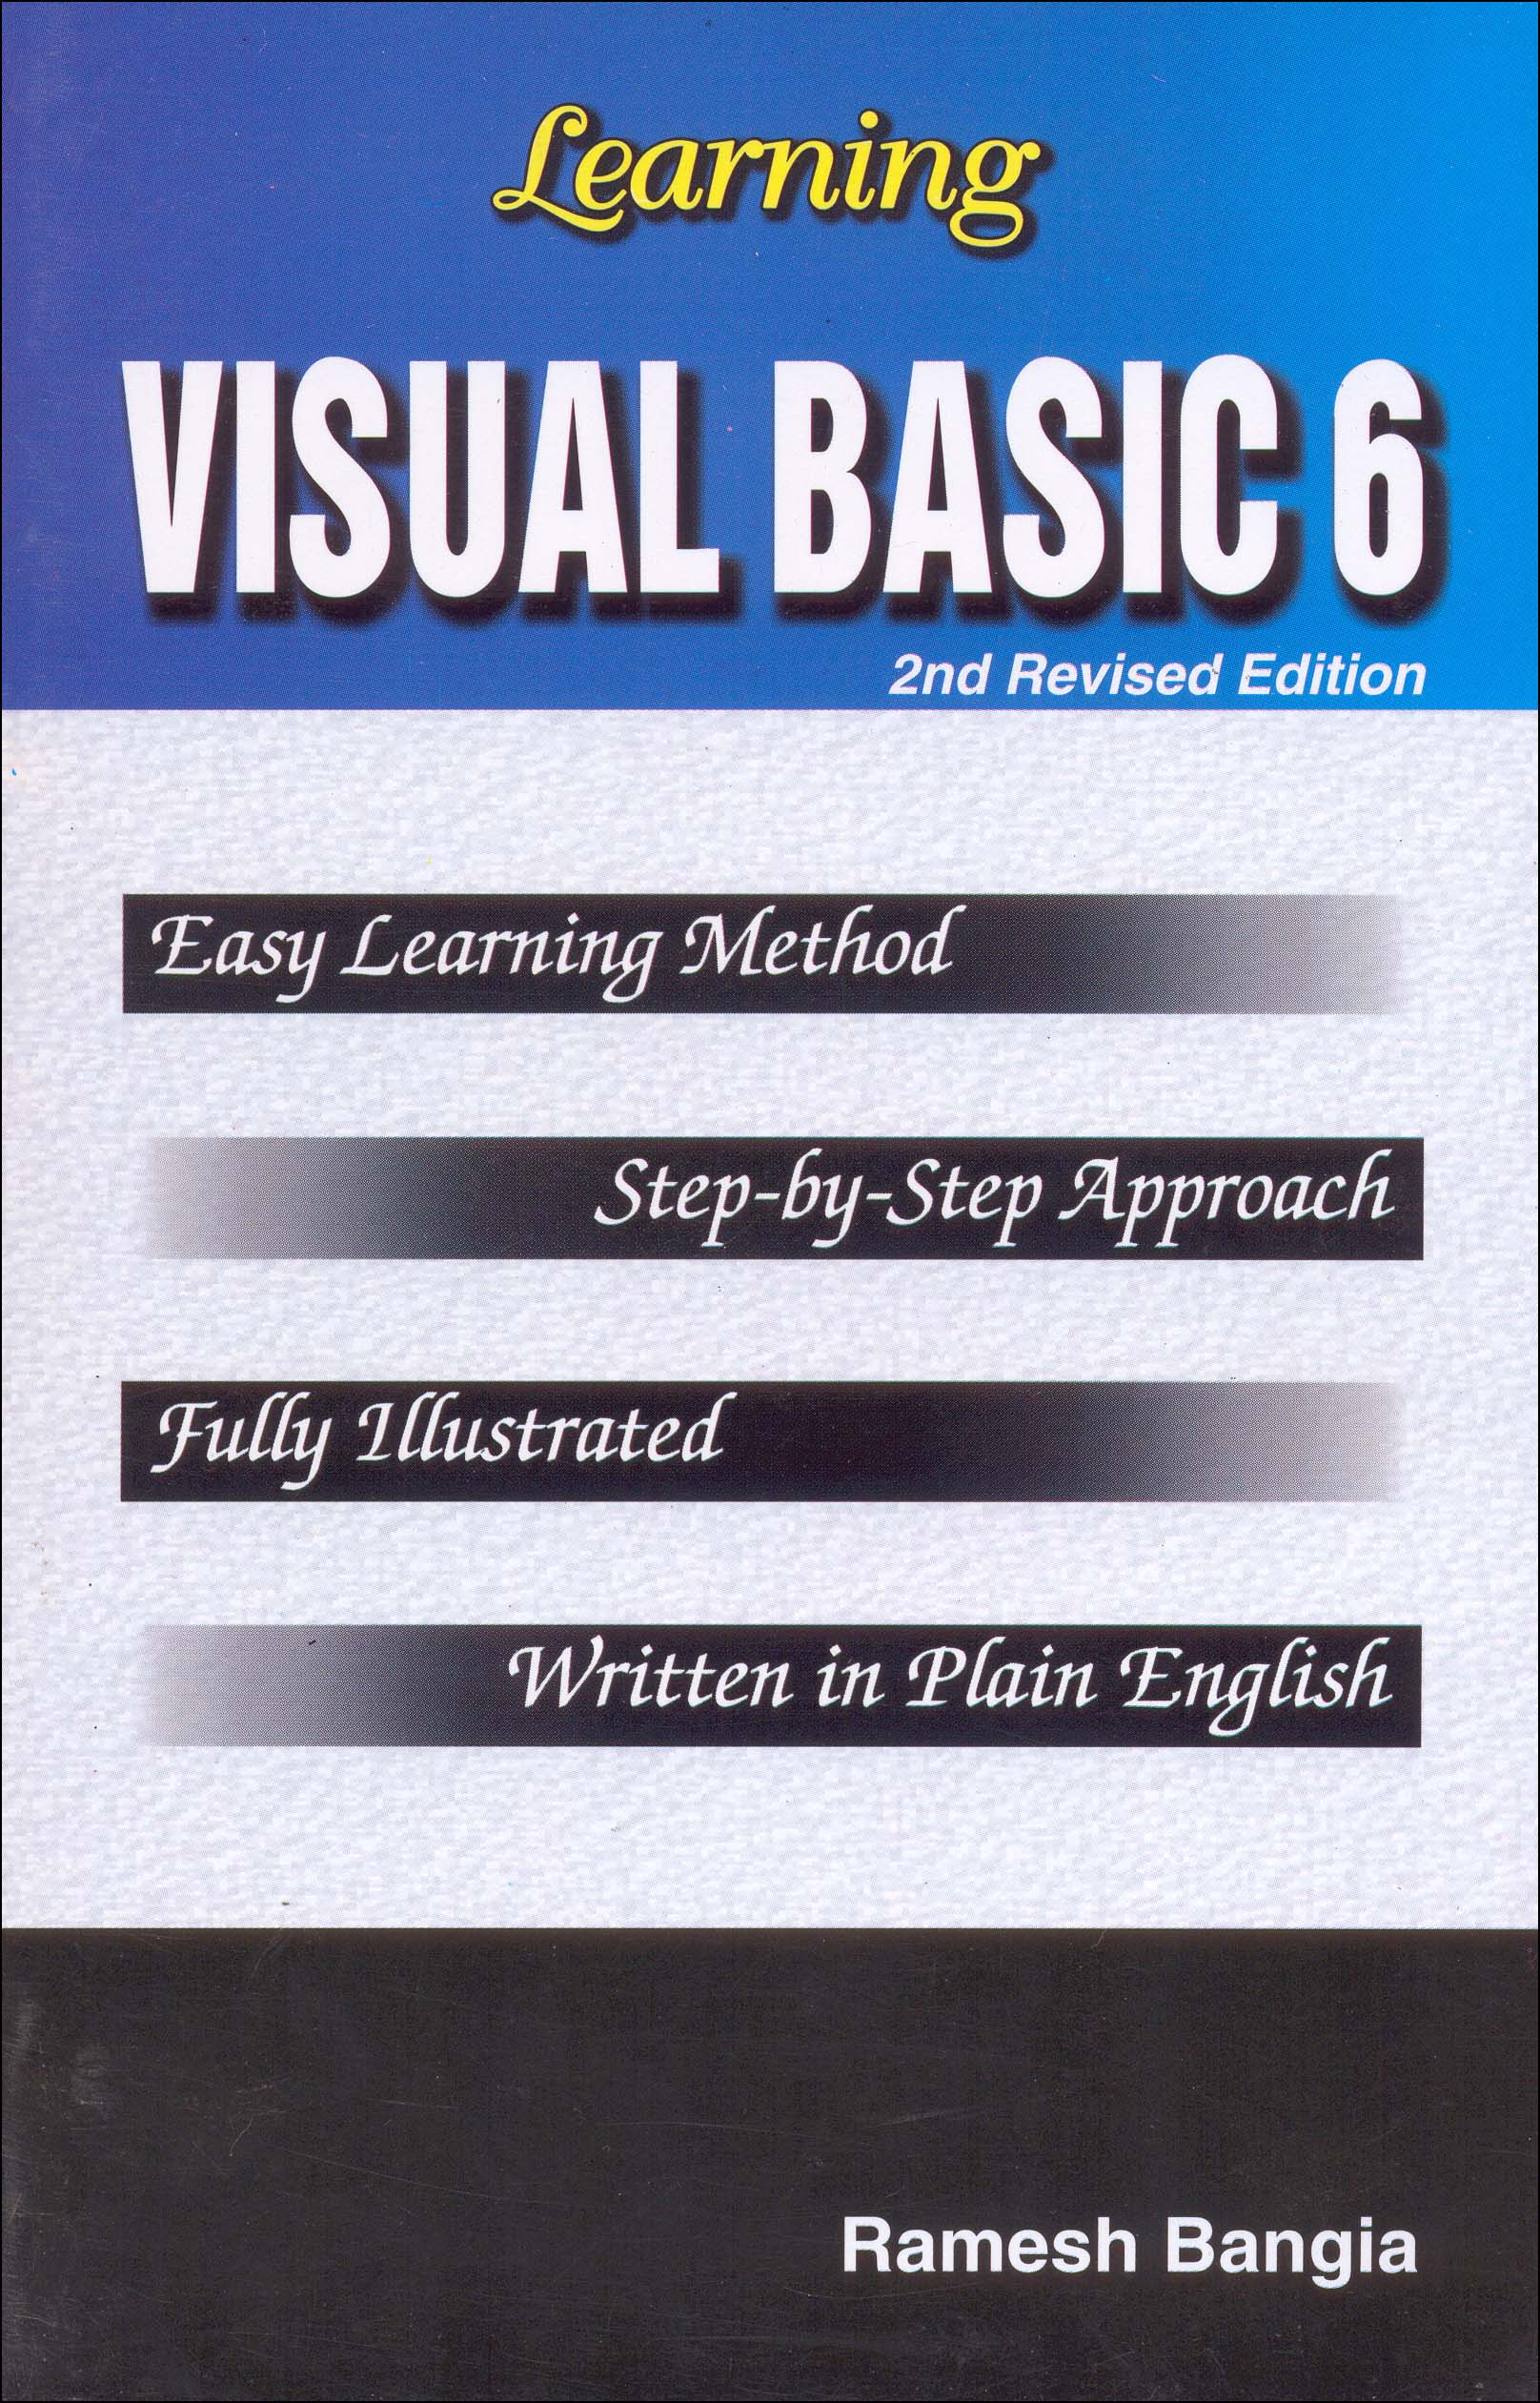 Learning Visual Basic 6